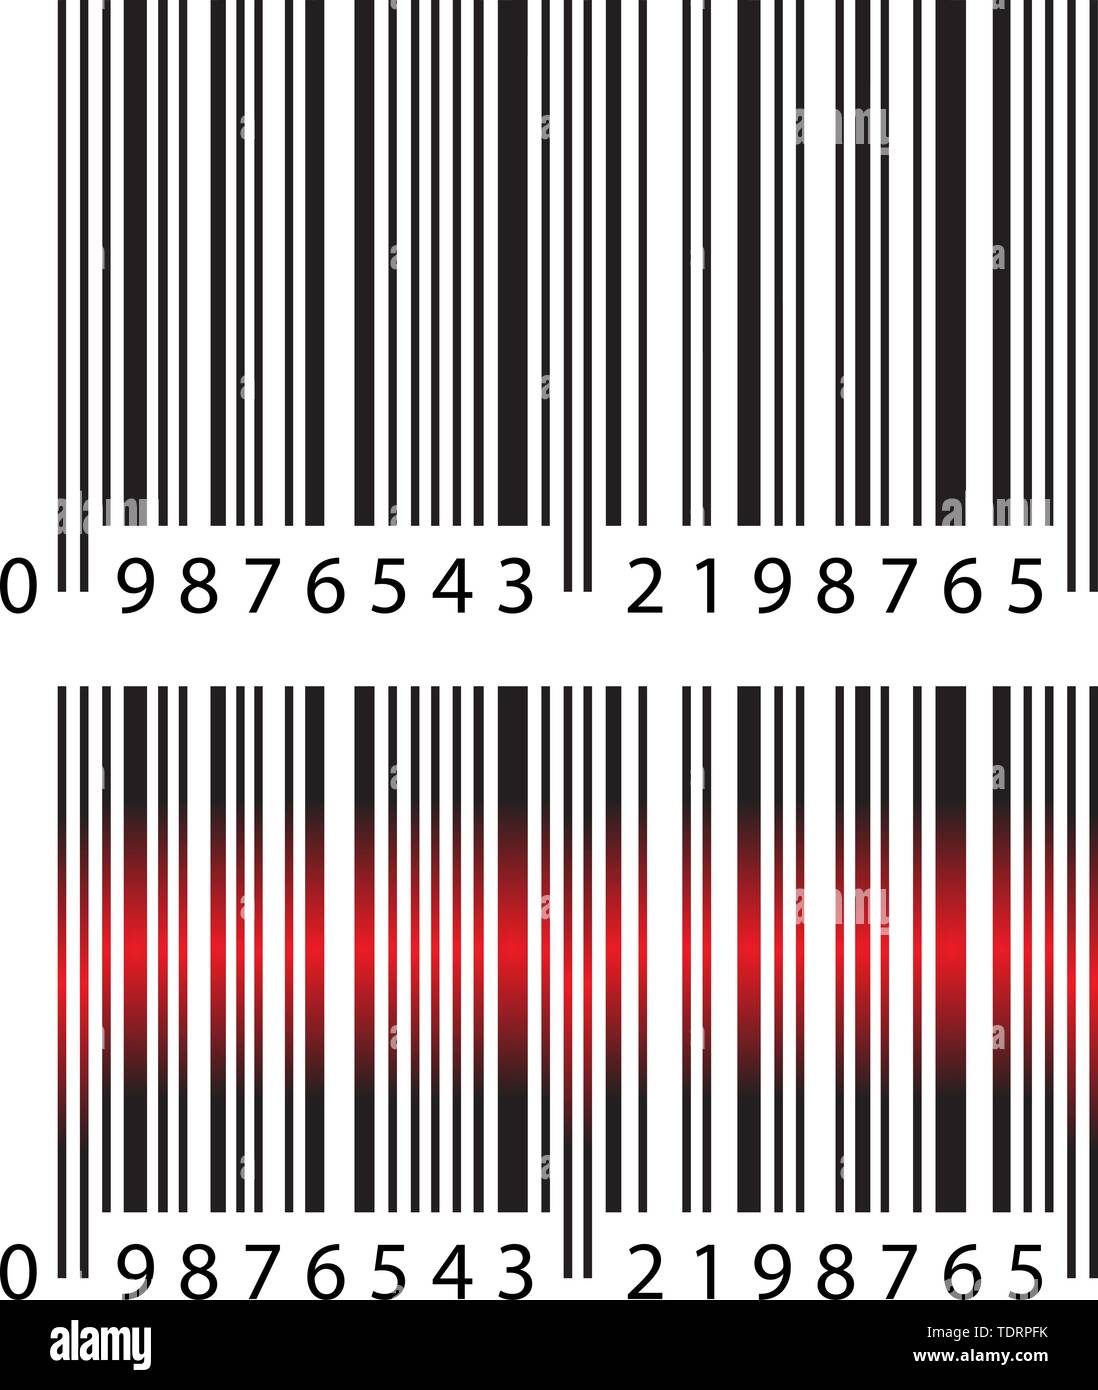 Simple réaliste moderne avec code-barres Barcode & lumière laser rouge sur  fond blanc. Marketing, Internet Concept, supermarché acheter Application  Mobile Logo etc Image Vectorielle Stock - Alamy